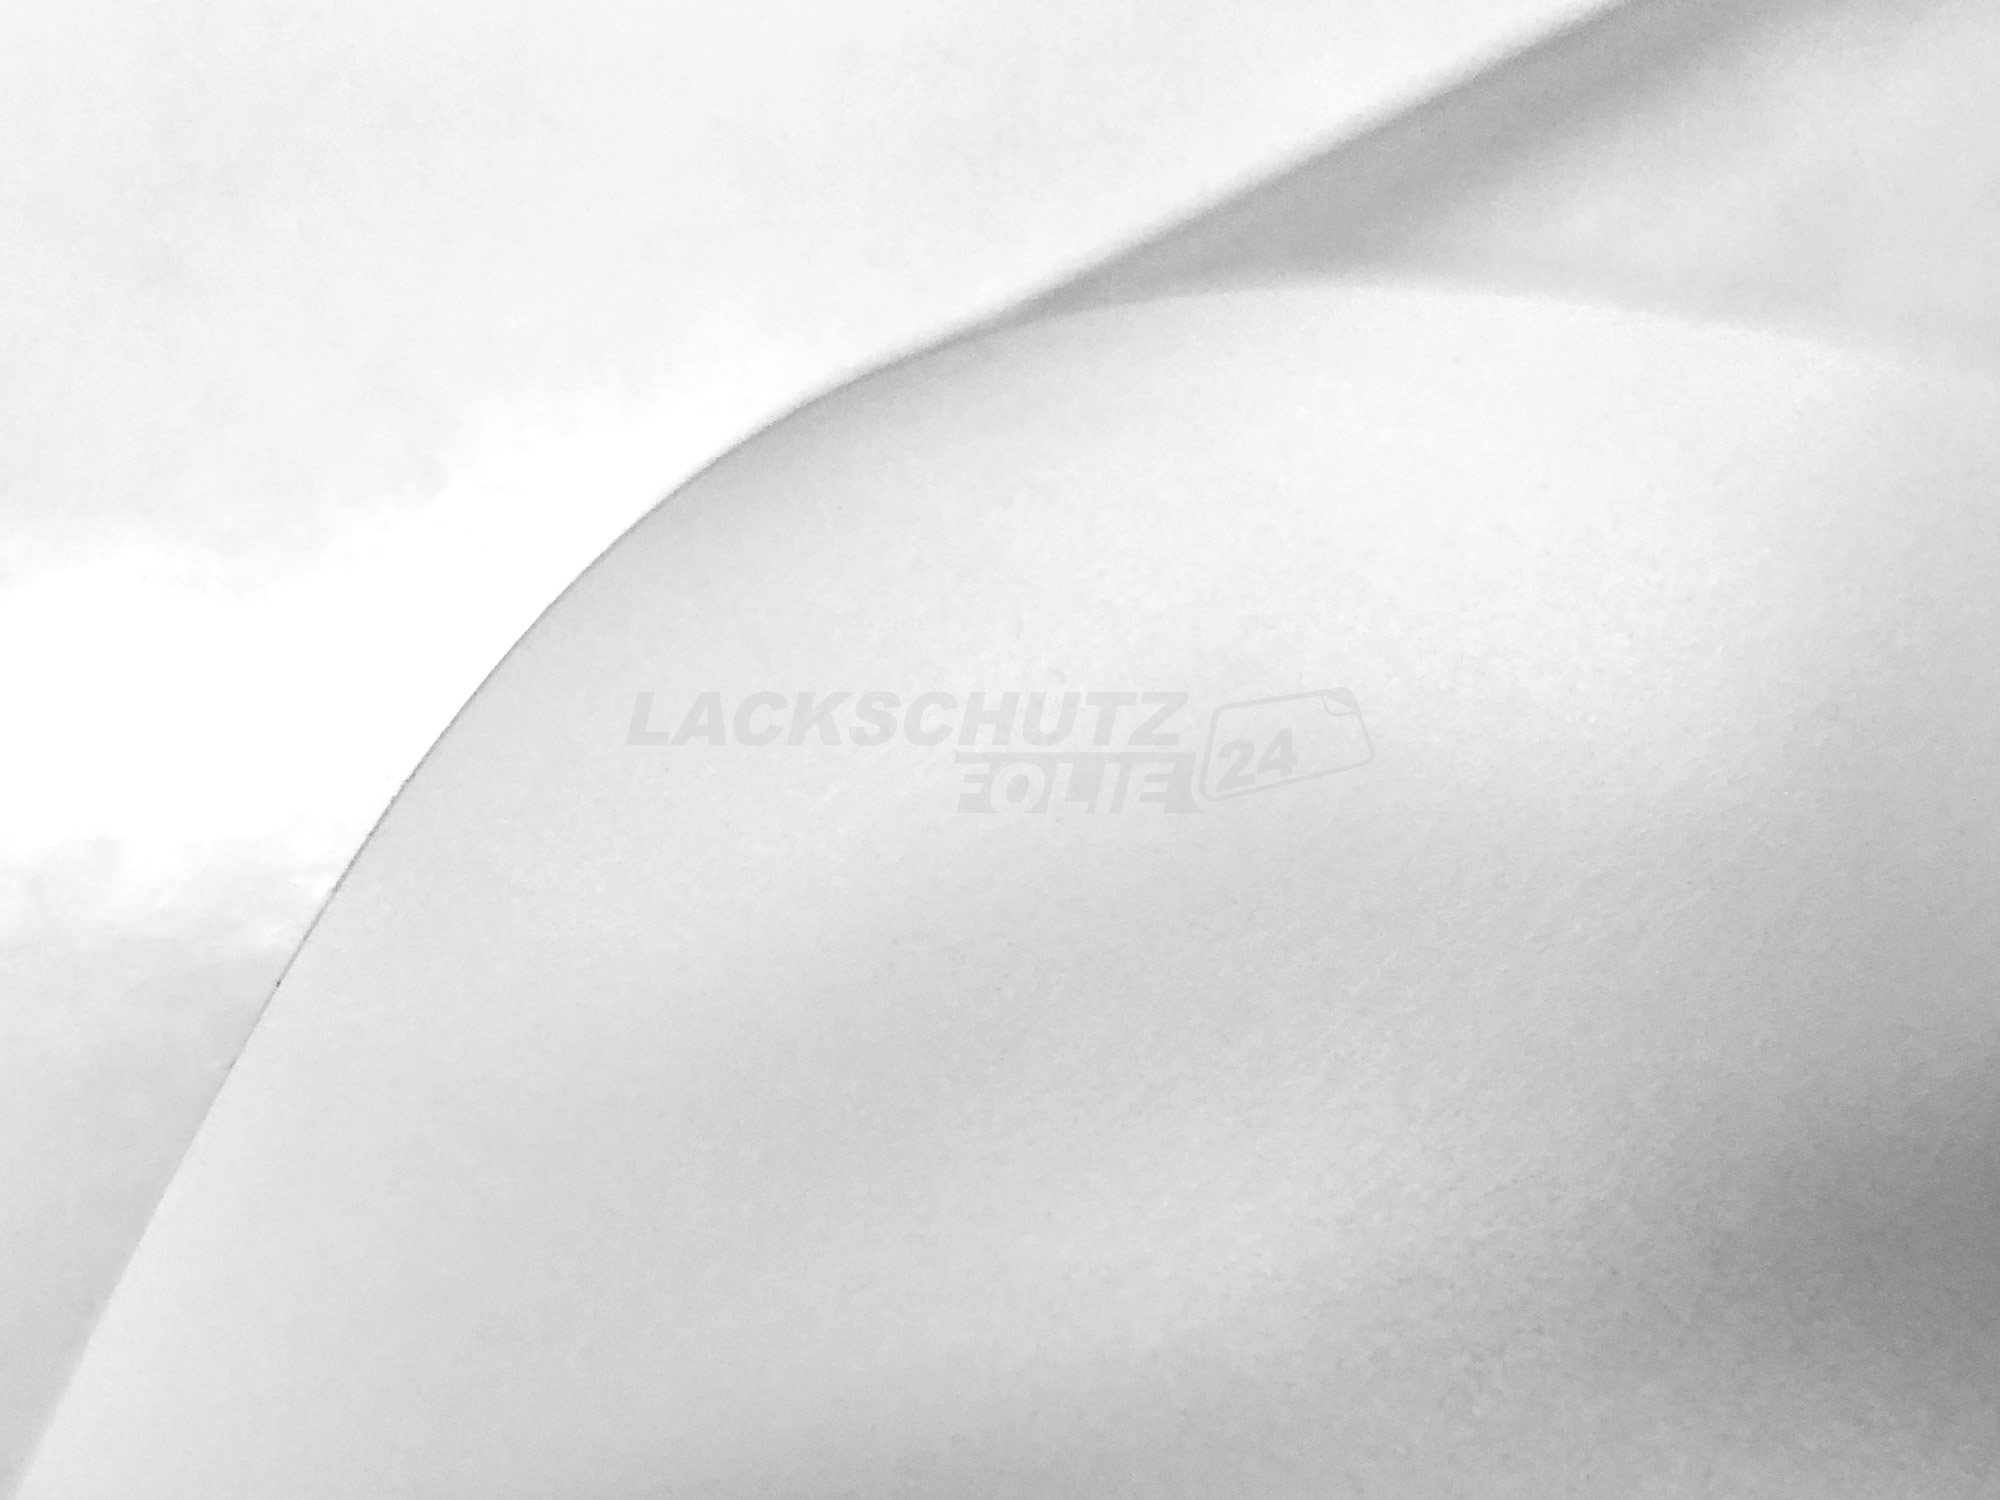 Ladekantenschutzfolie - Transparent Glatt MATT 110 µm stark  für Opel Mokka Typ A, BJ 09/2012-2016